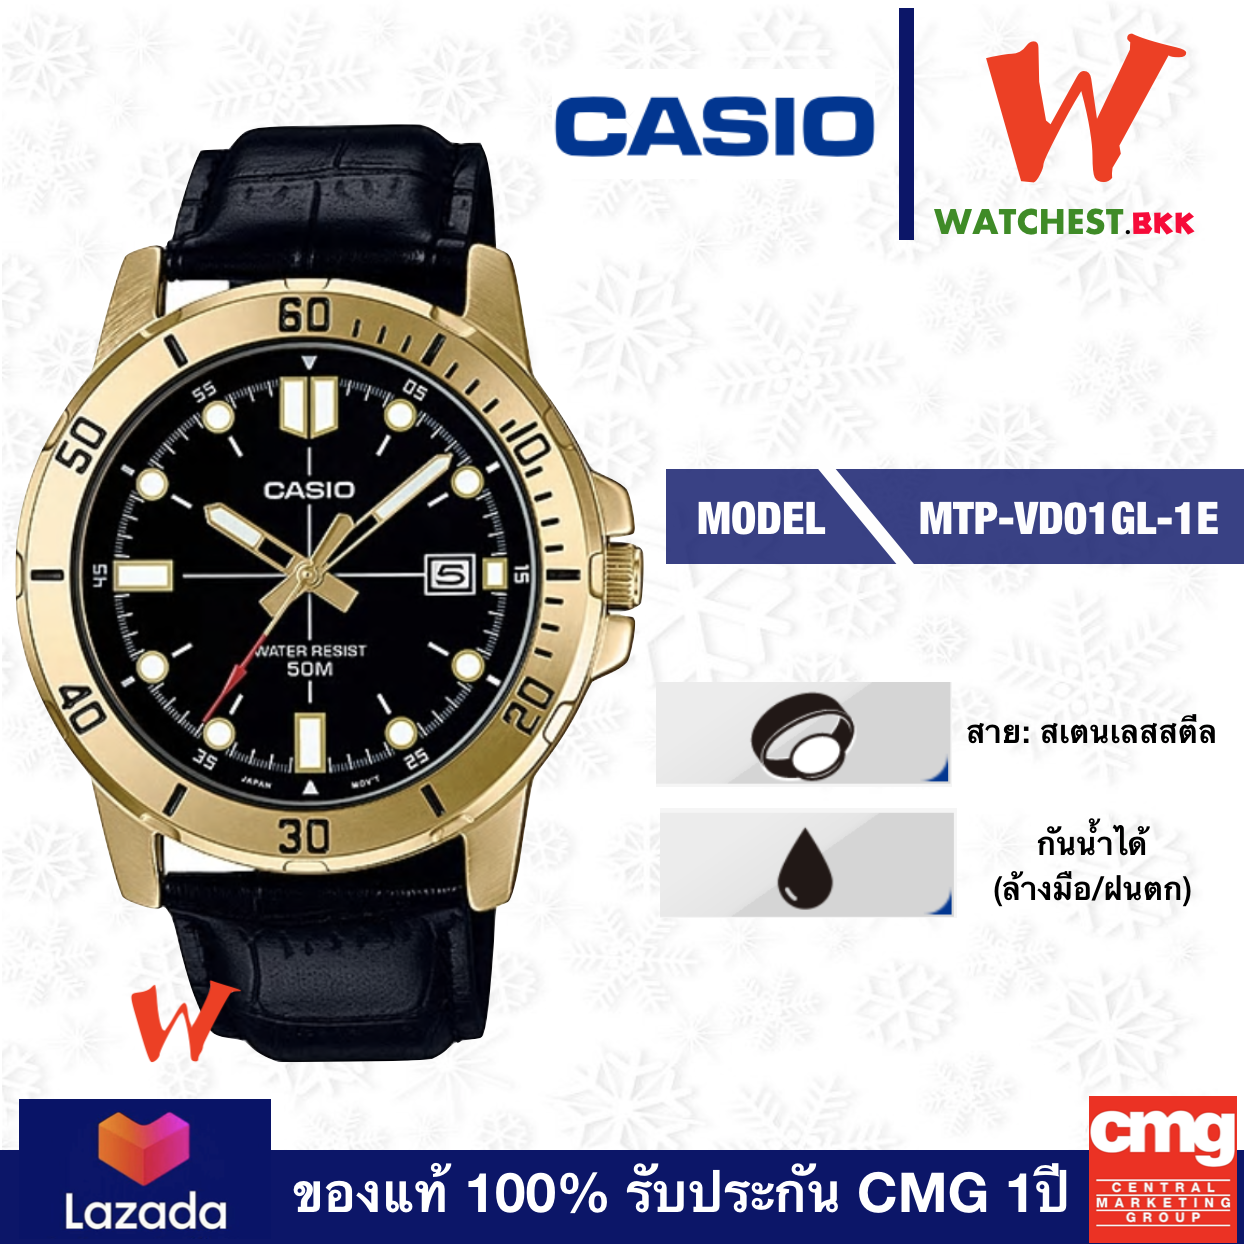 casio นาฬิกาข้อมือผู้ชาย สายหนัง รุ่น MTP-VD01GL-1E คาสิโอ้ สายหนัง ตัวล็อกแบบสายสอด (watchestbkk คาสิโอ แท้ ของแท้100% ประกัน CMG)